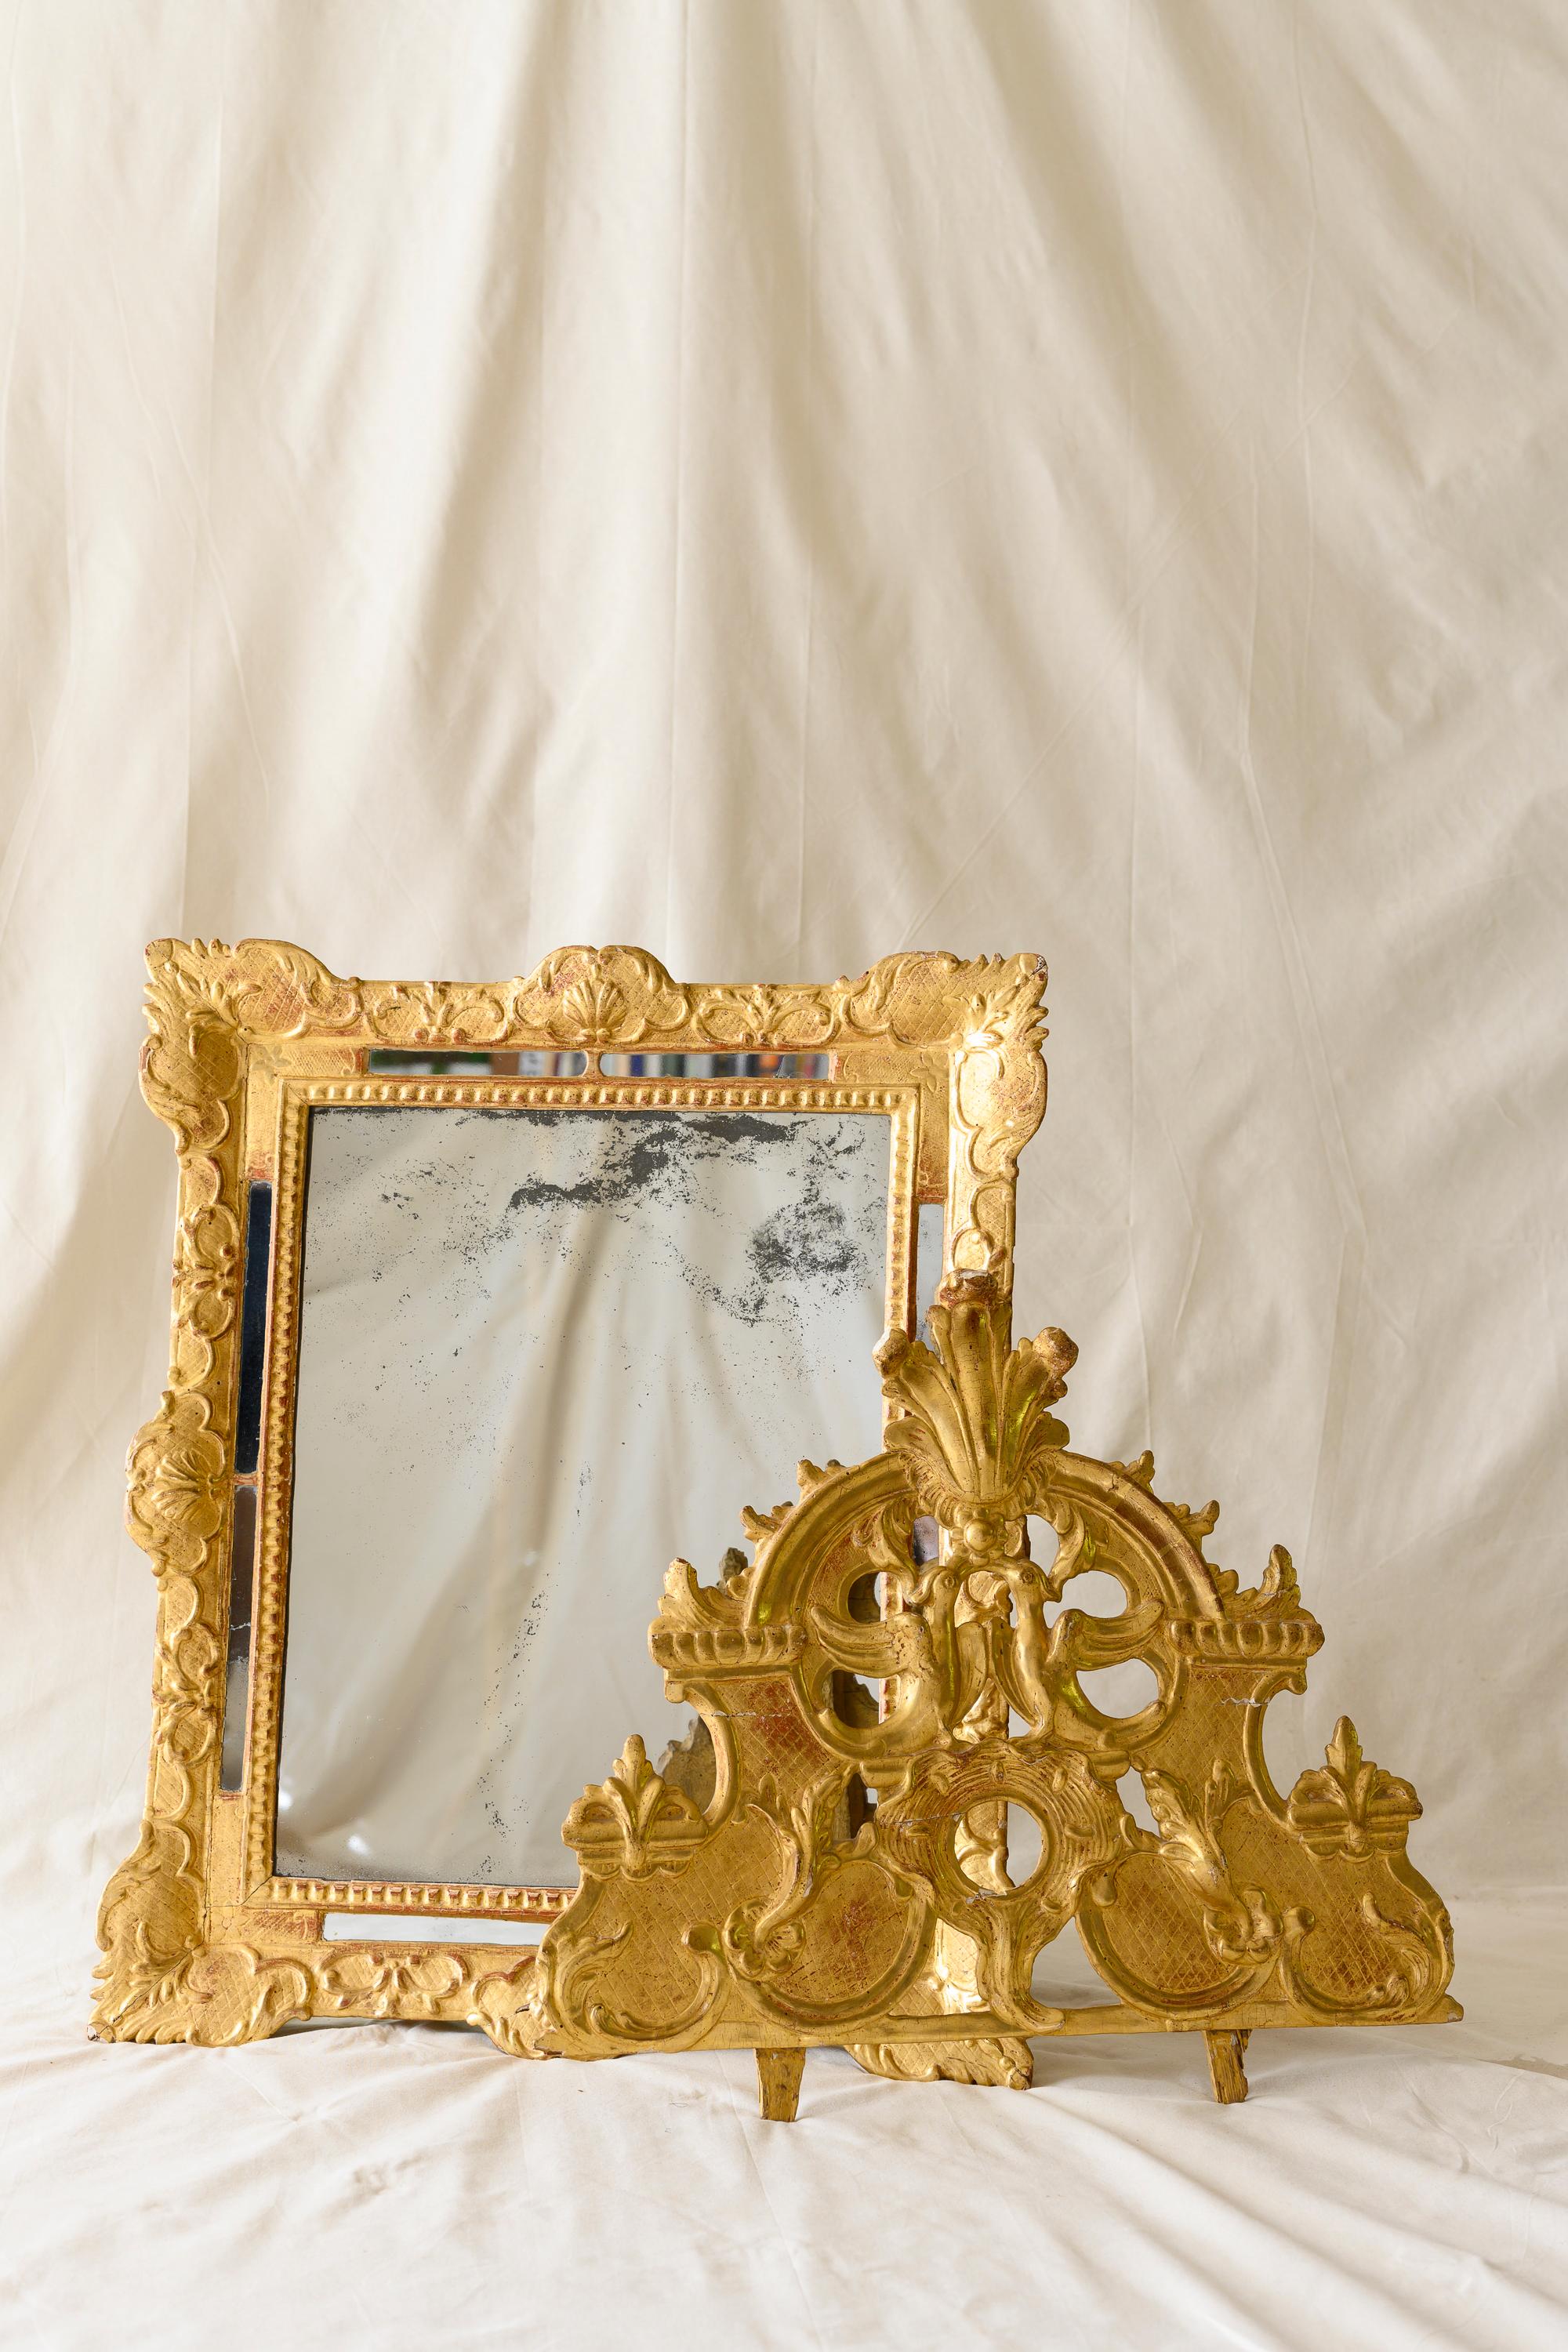 18th Century French Regency Period Glitwood Wedding Mirror For Sale